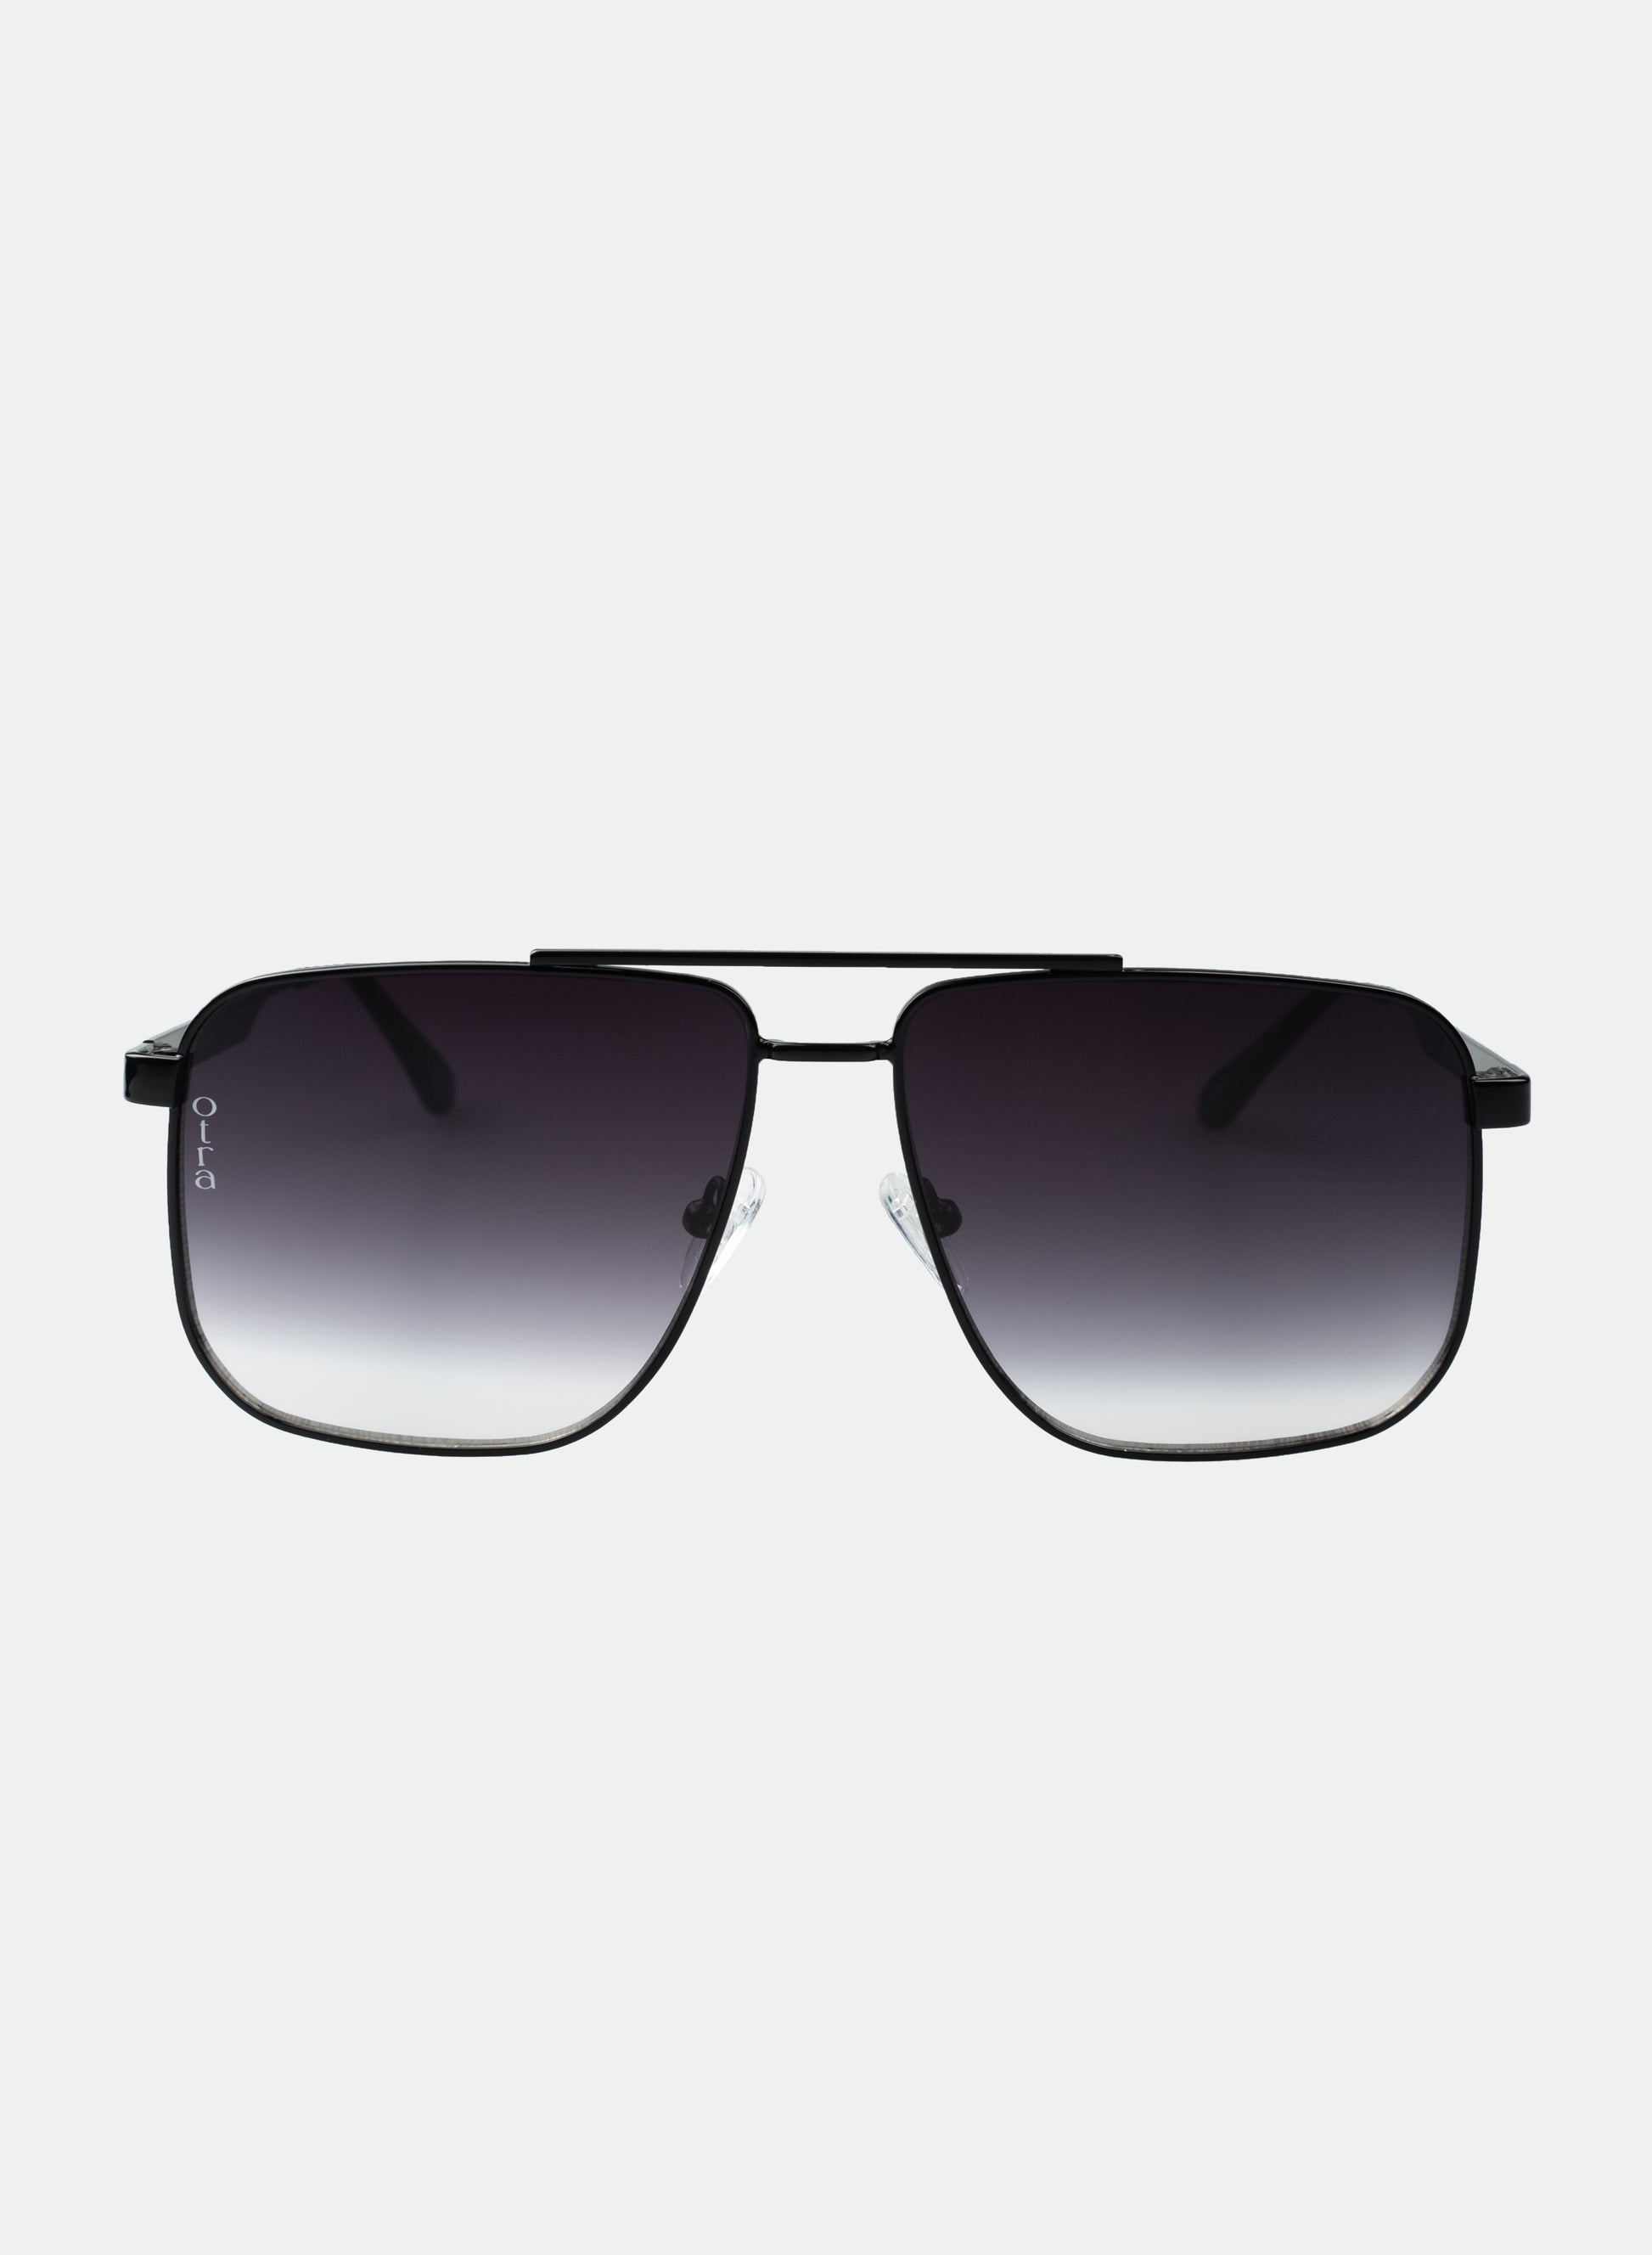 Sorrento sunglasses in black fade